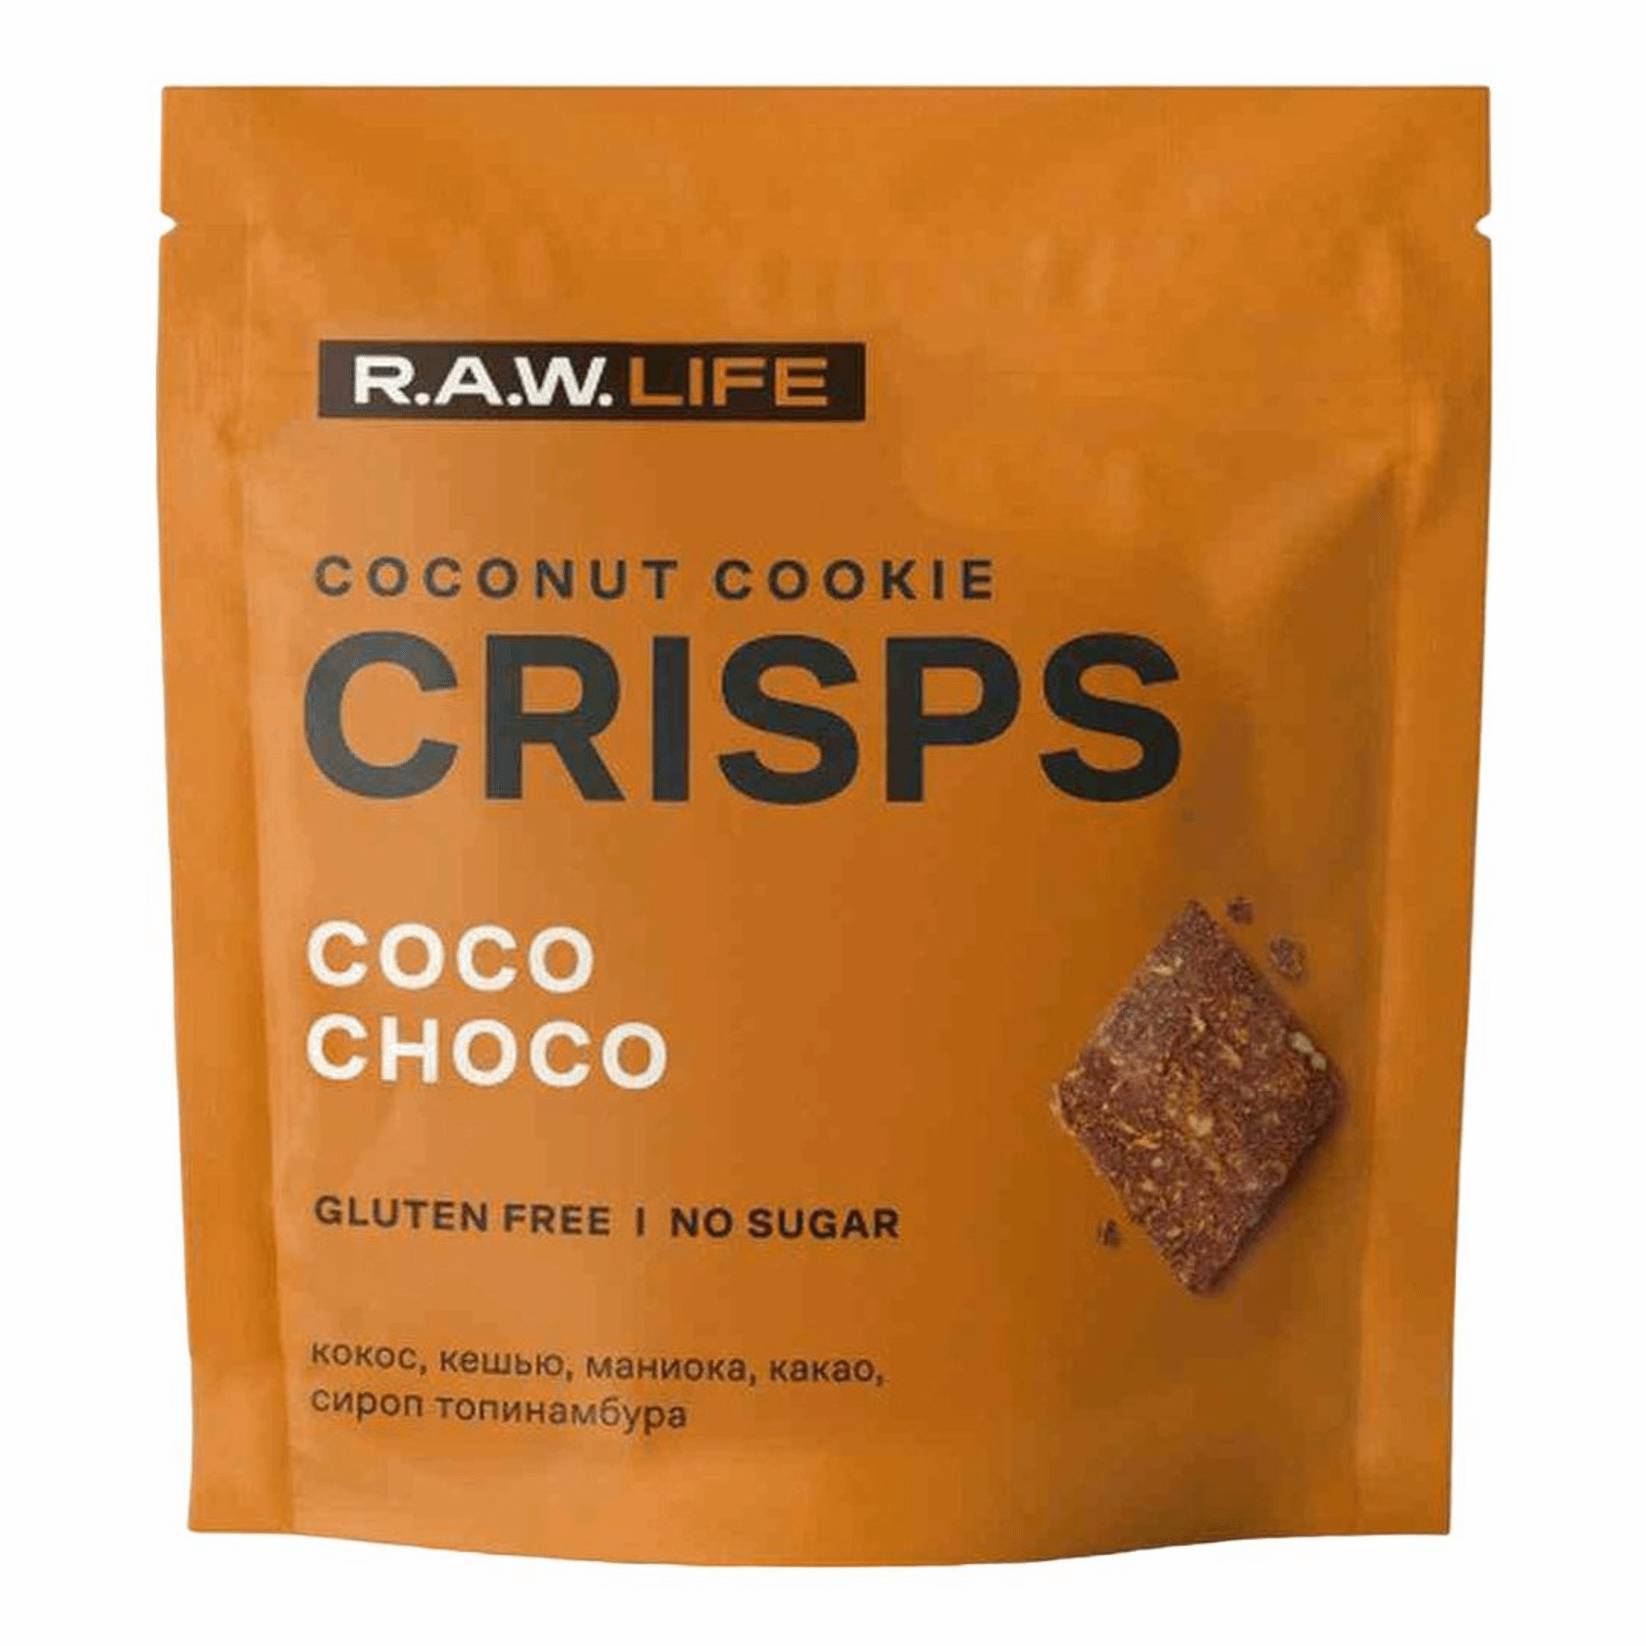 Печенье R.A.W. LIFE Crisps кокос-шоколад, 35 г печенье r a w life crisps кокос карамель 35 г